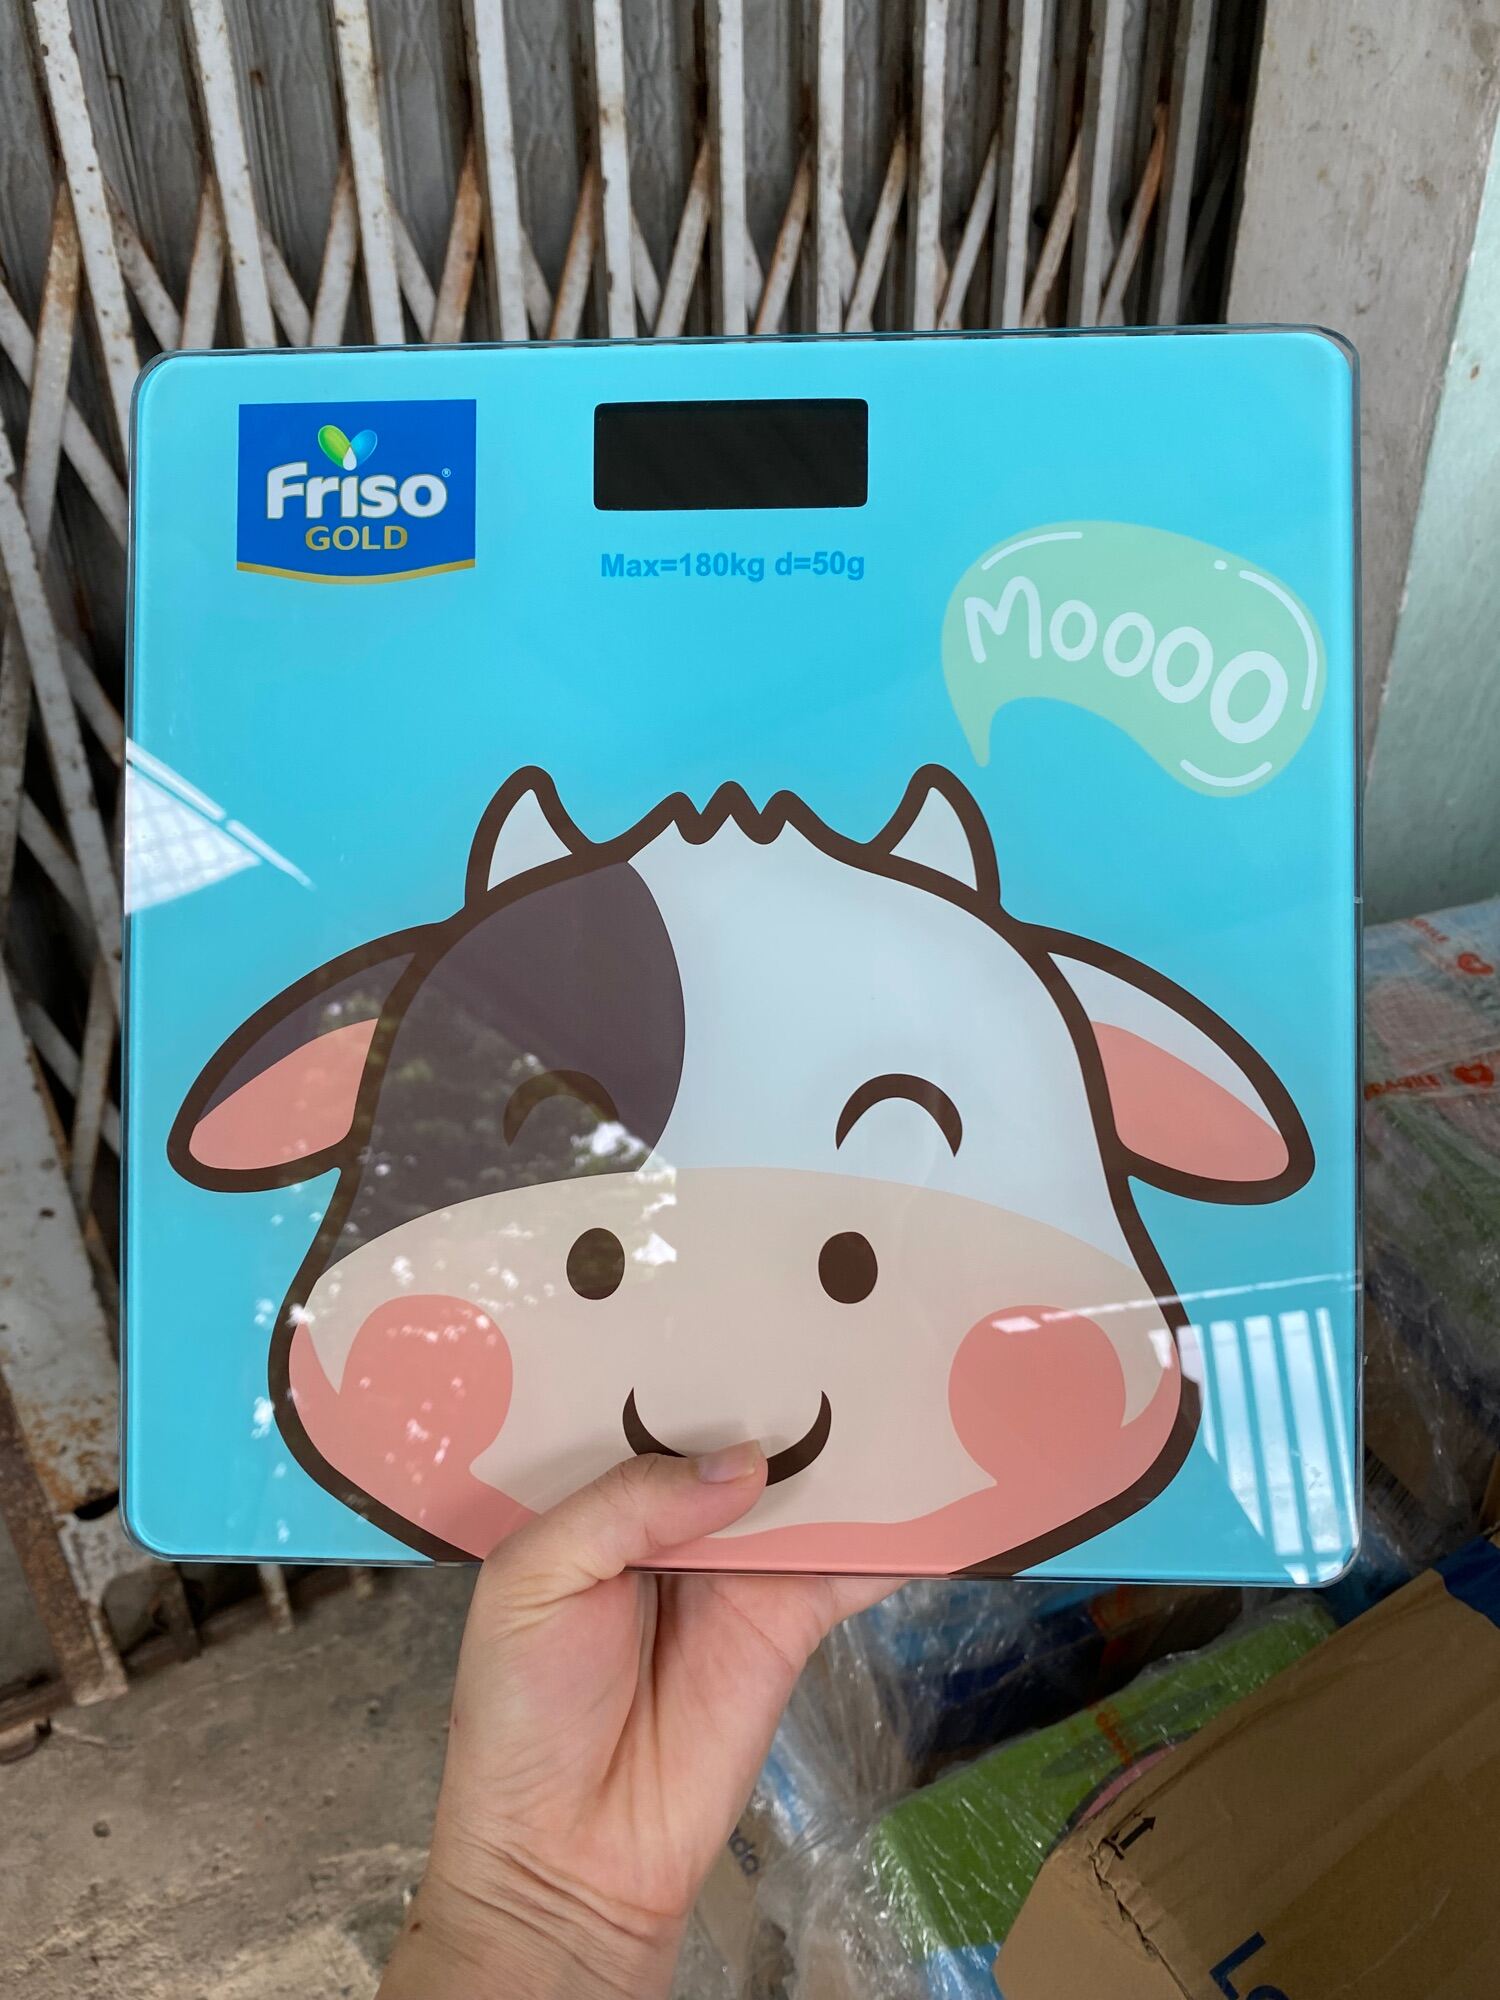 Cân đo điện tử hình bò sữa xinh xắn quà tặng từ Friso nhập khẩu